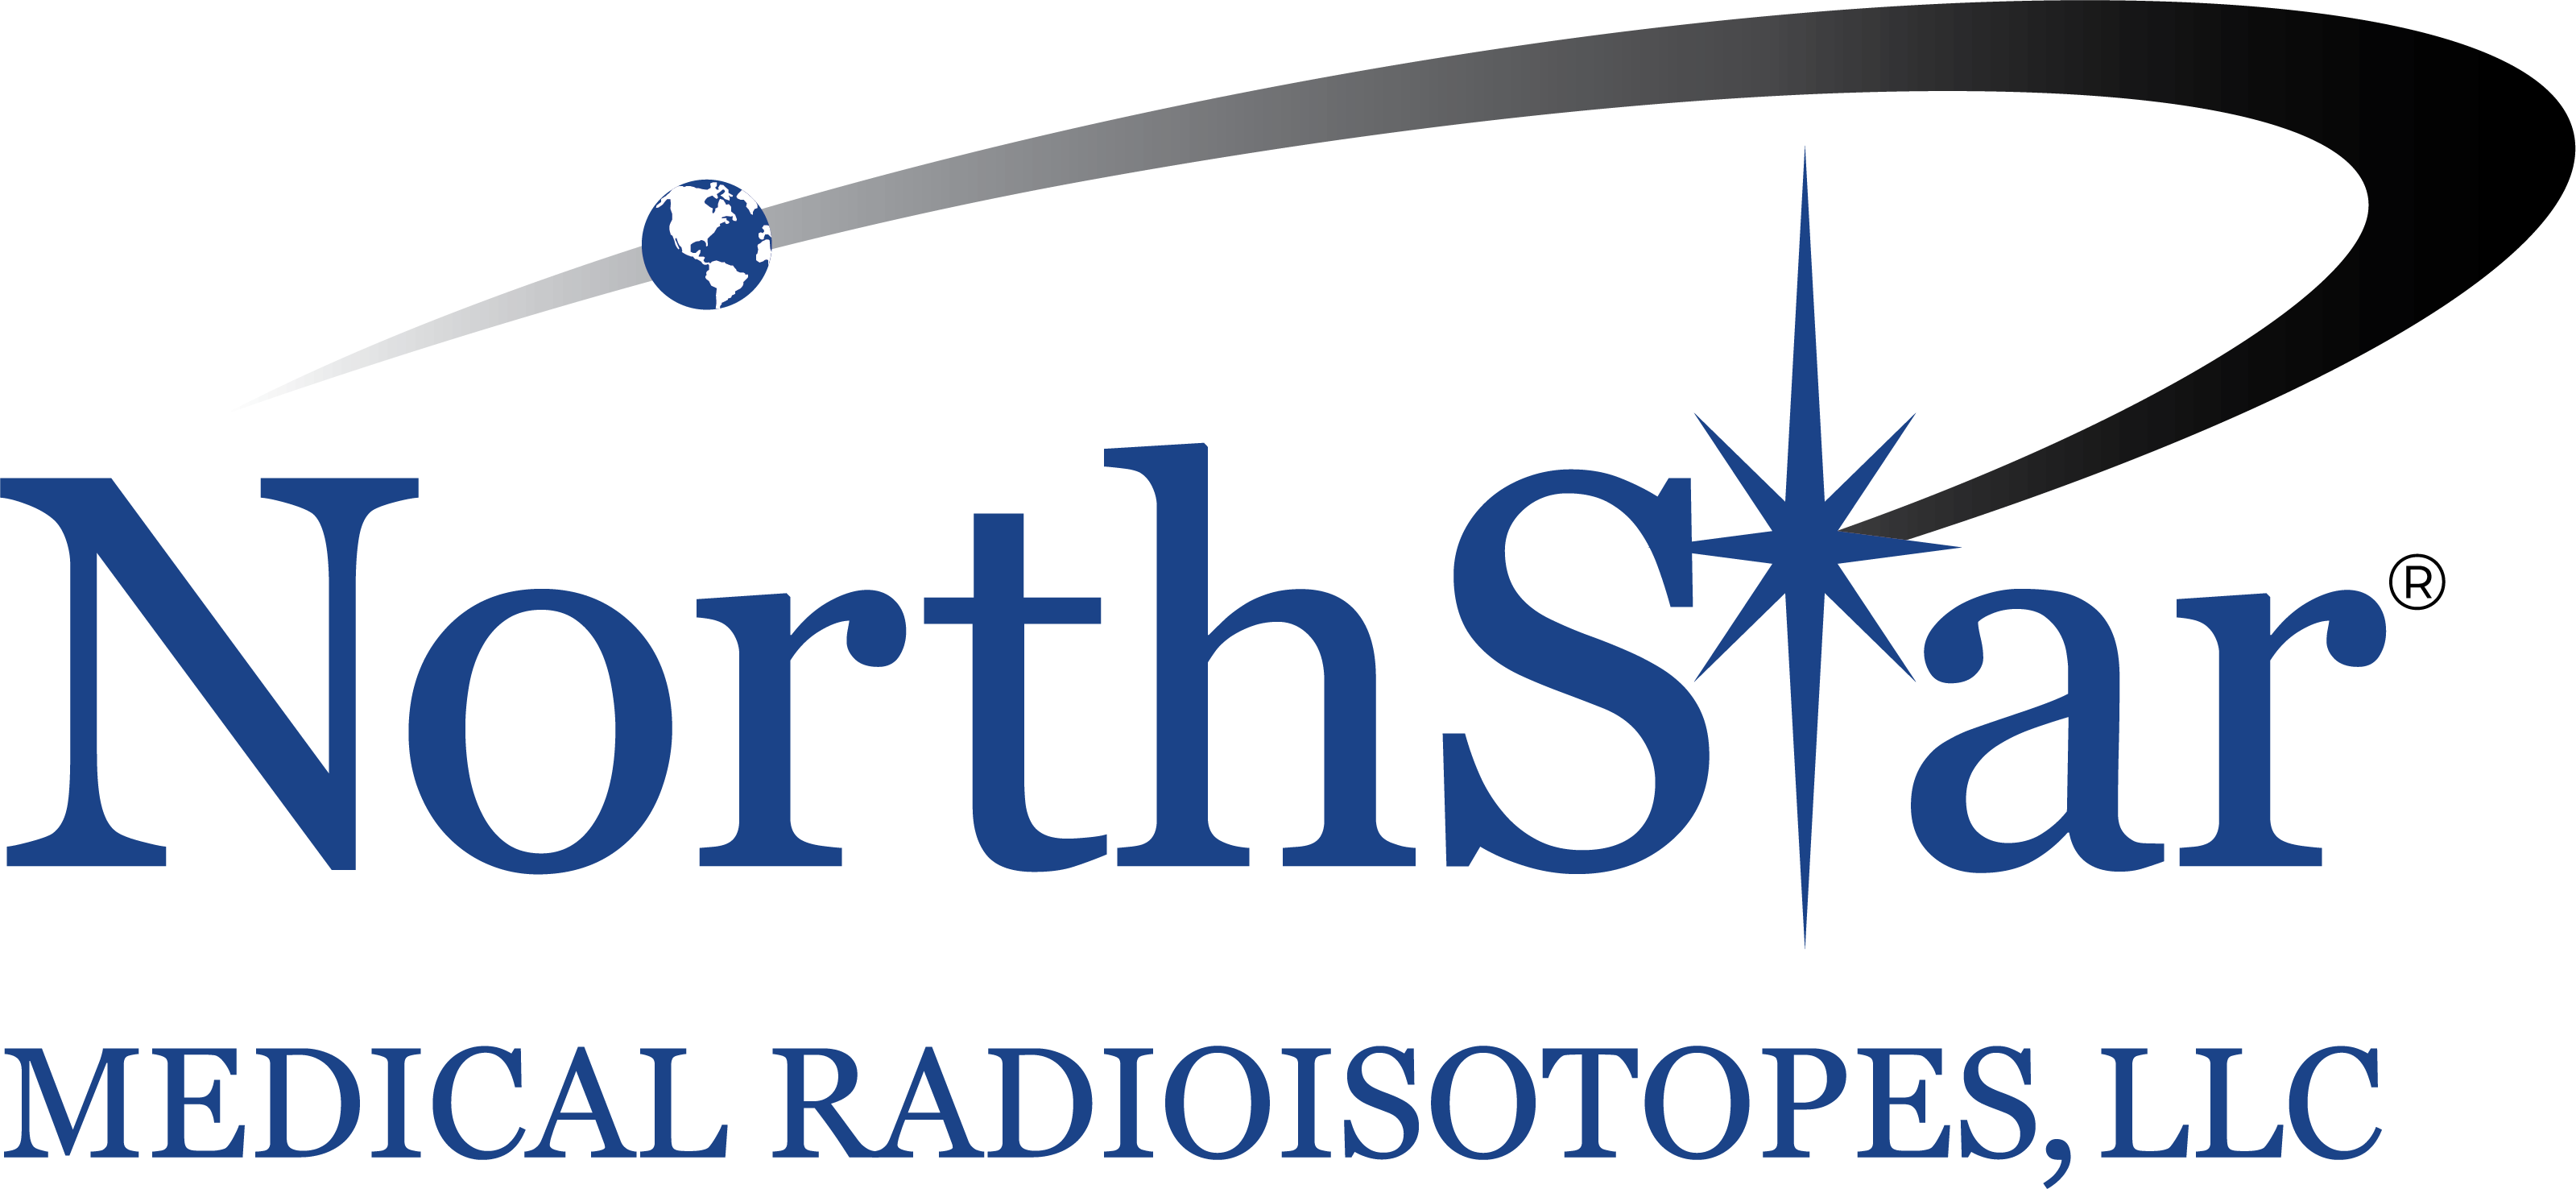 NorthStar Medical Radioiostopes, LLC logo Nov 2018 - no sub, transparent...